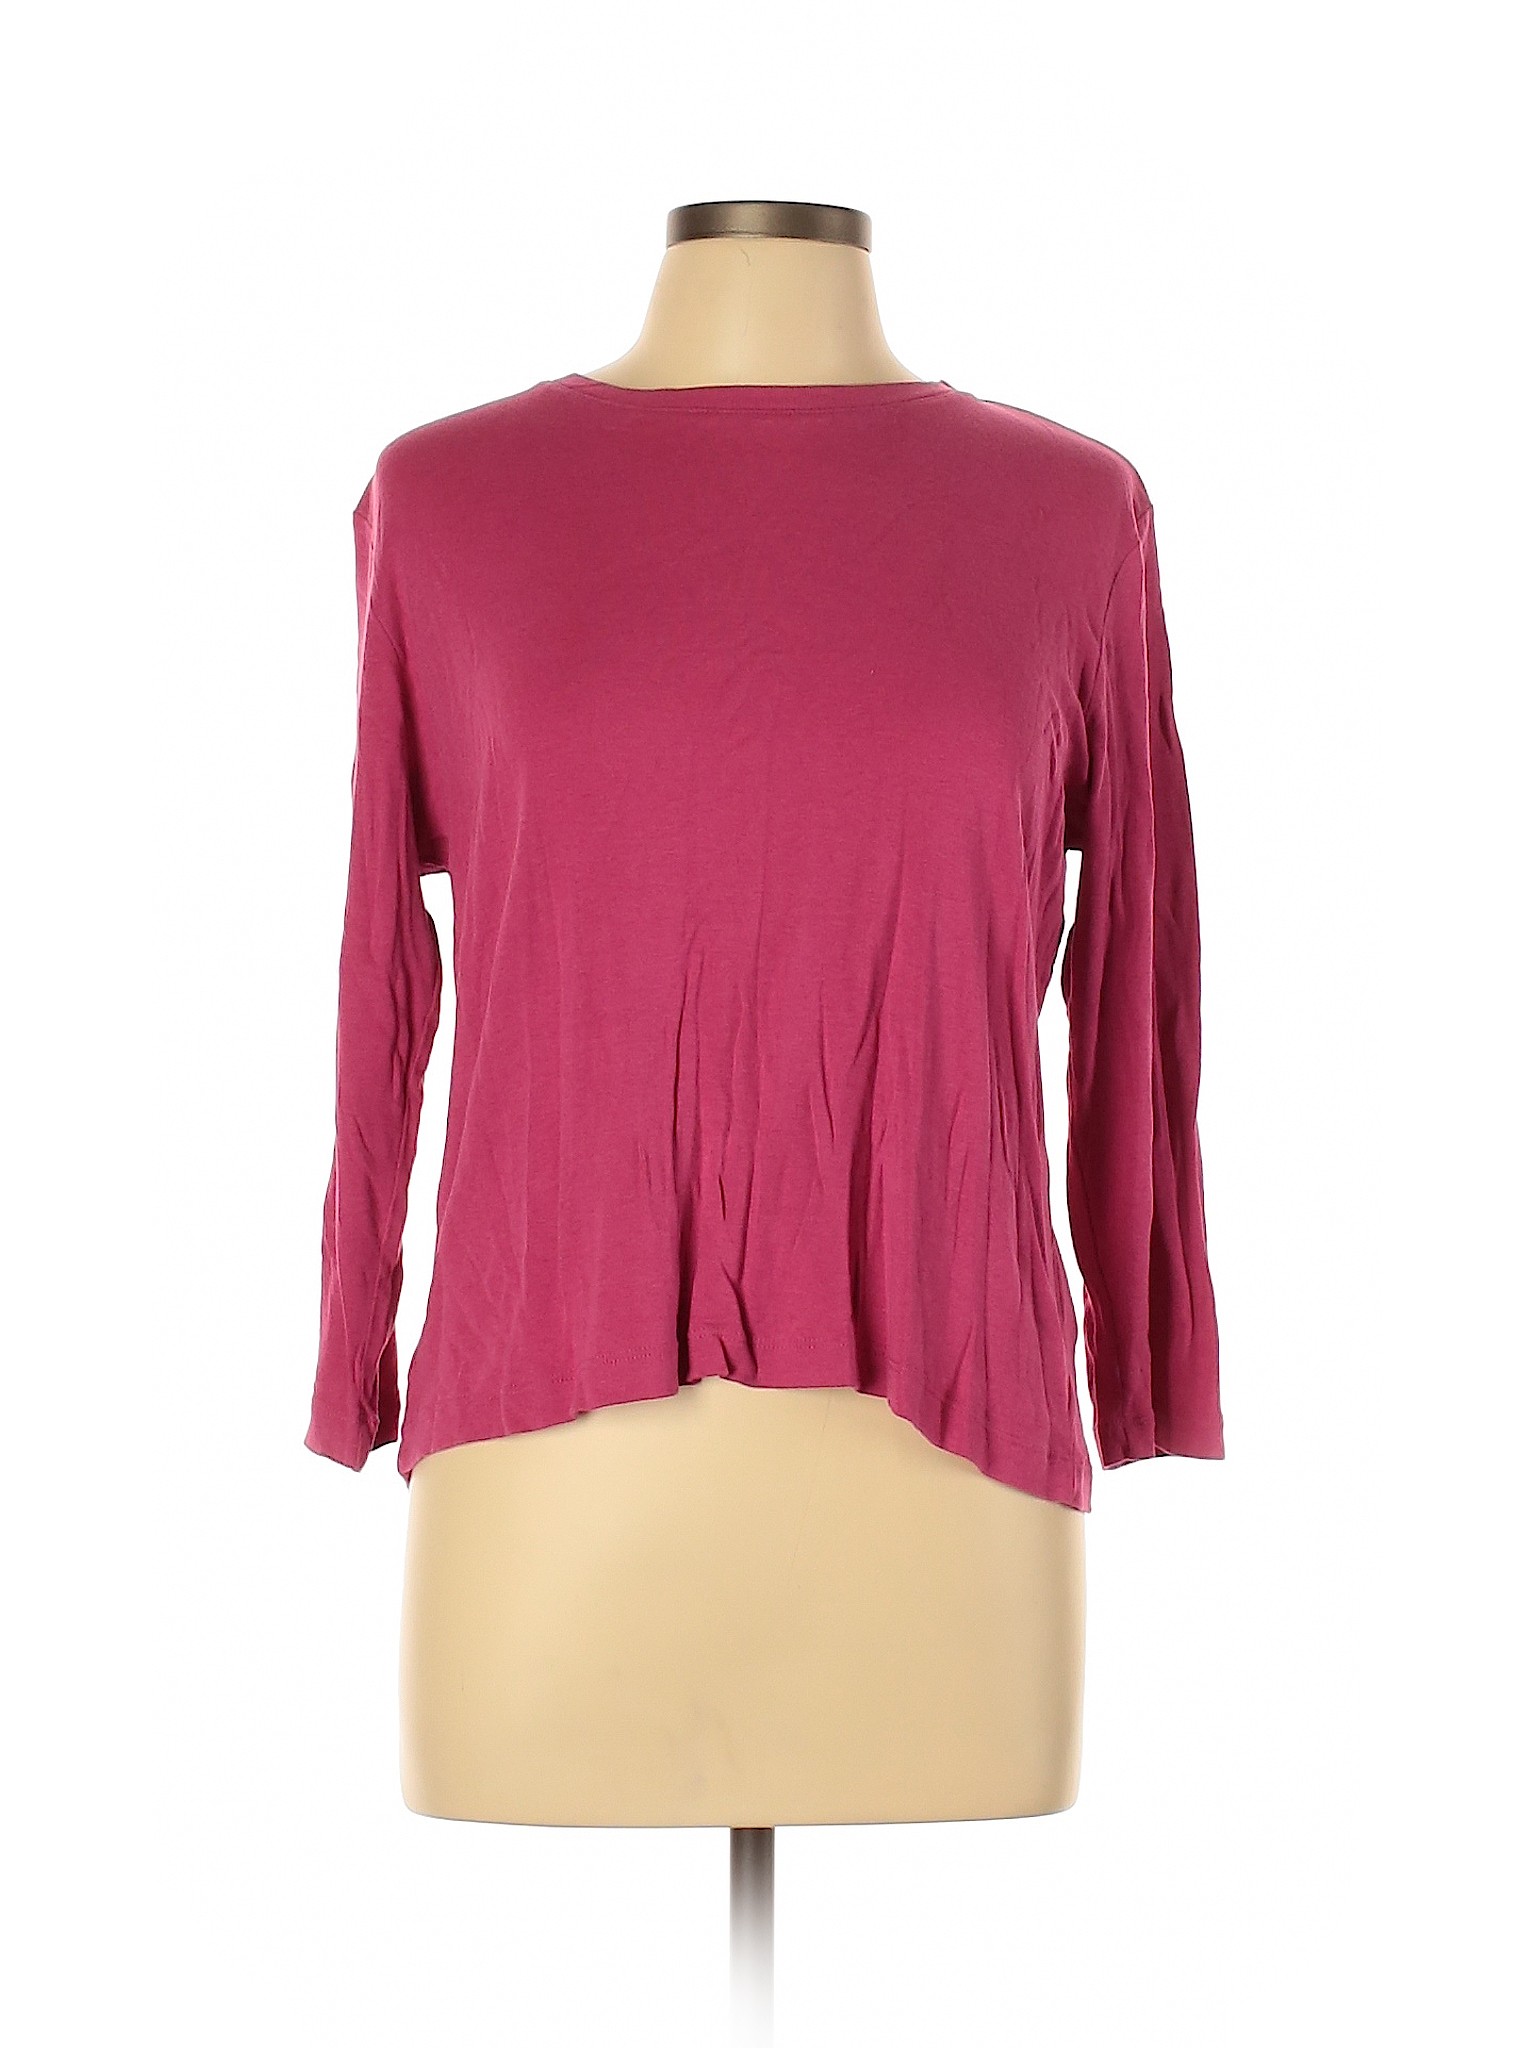 Lands' End Women Pink 3/4 Sleeve T-Shirt L | eBay